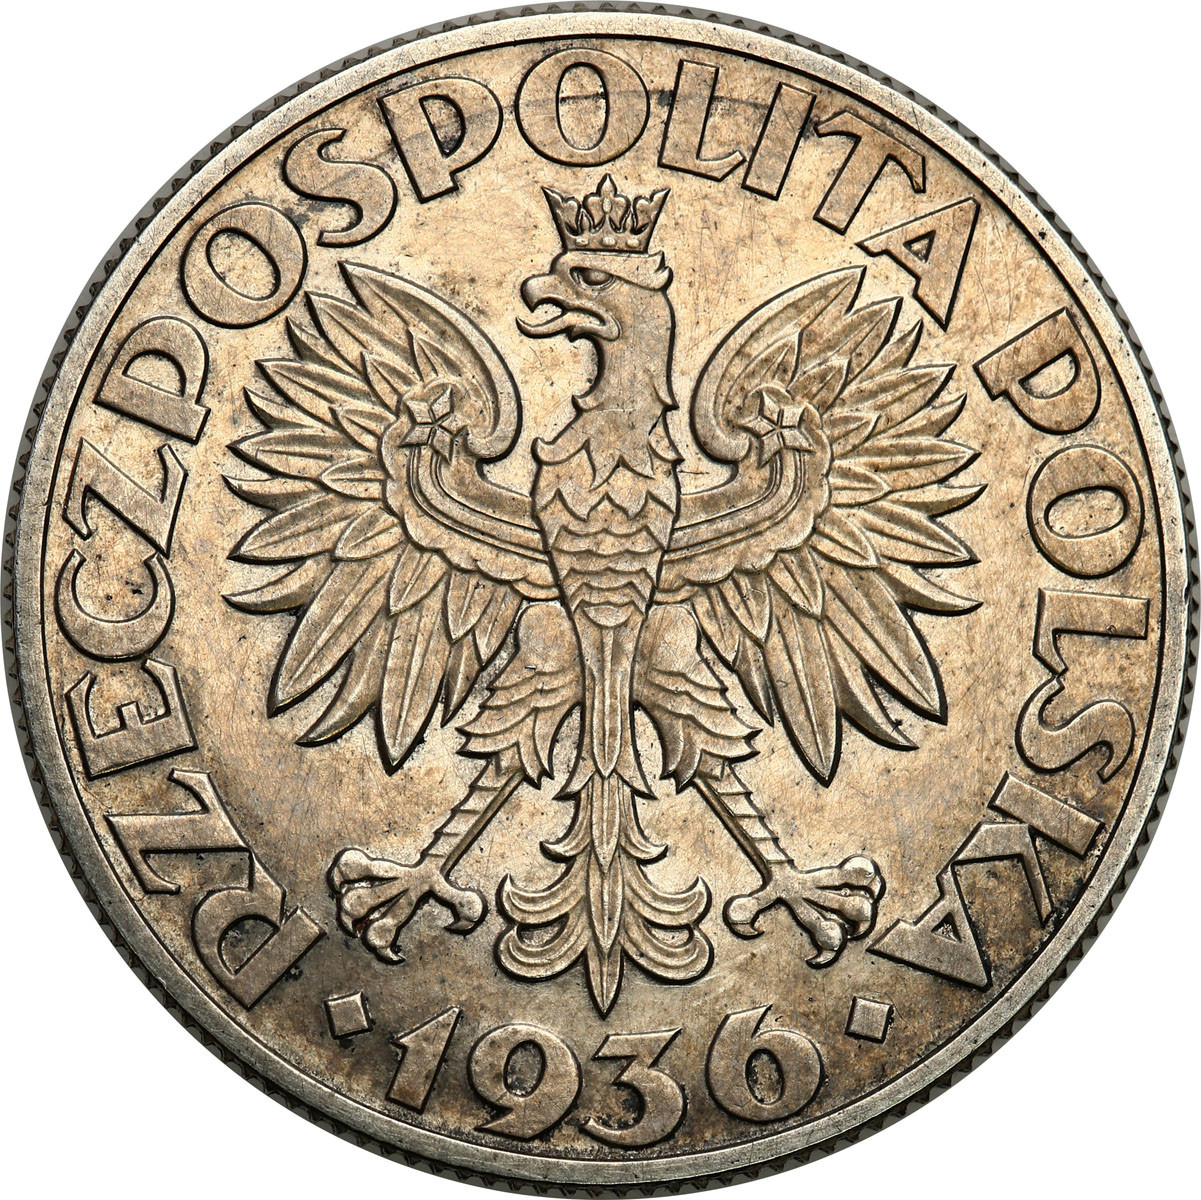 PRÓBA. Żaglowiec 5 złotych 1936 - stempel zwykły – zwykły napis PRÓBA